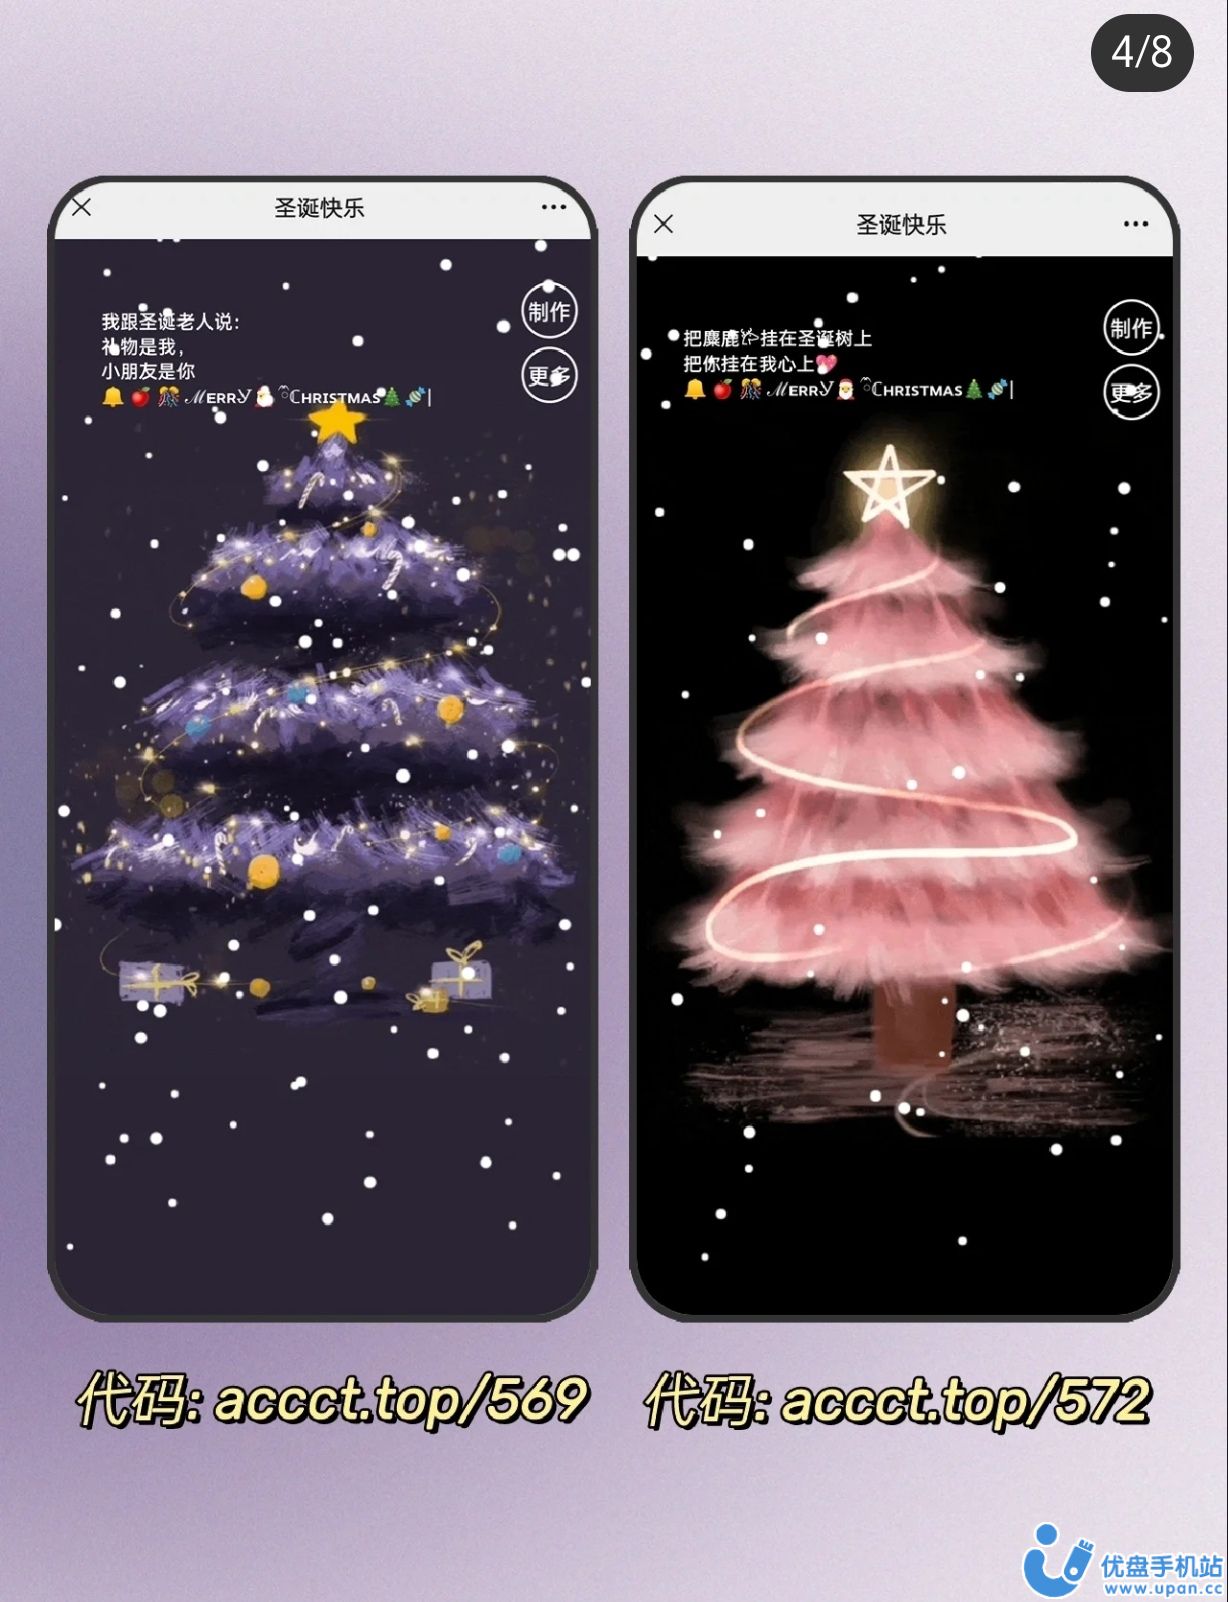 圣诞节微信朋友圈冬季晒照手机海报_图片模板素材-稿定设计